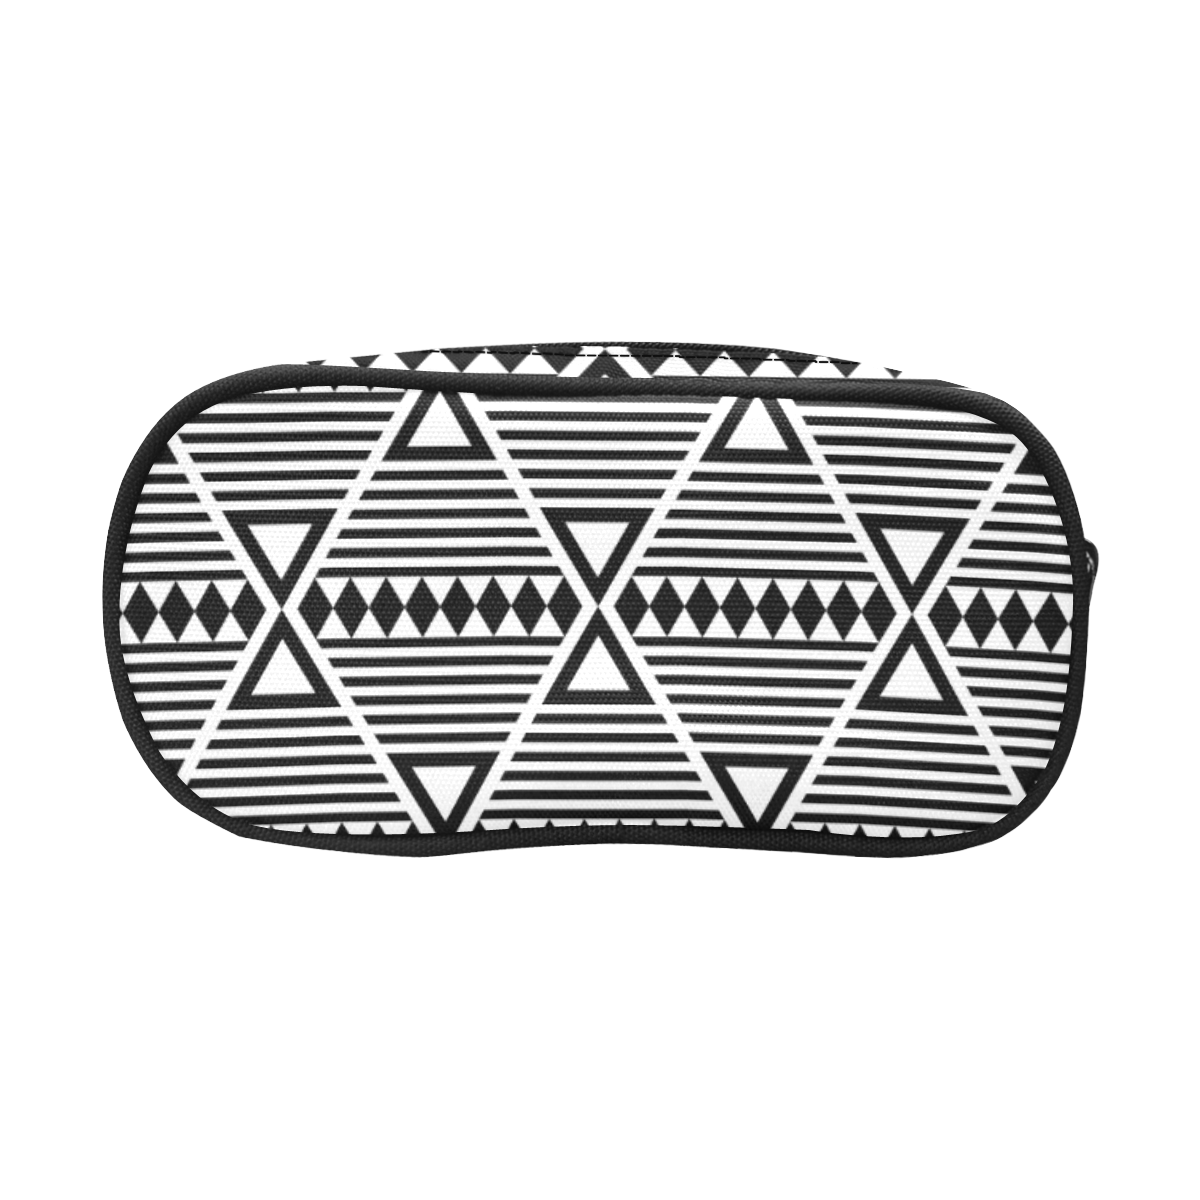 Black Aztec Tribal Pencil Pouch/Large (Model 1680)